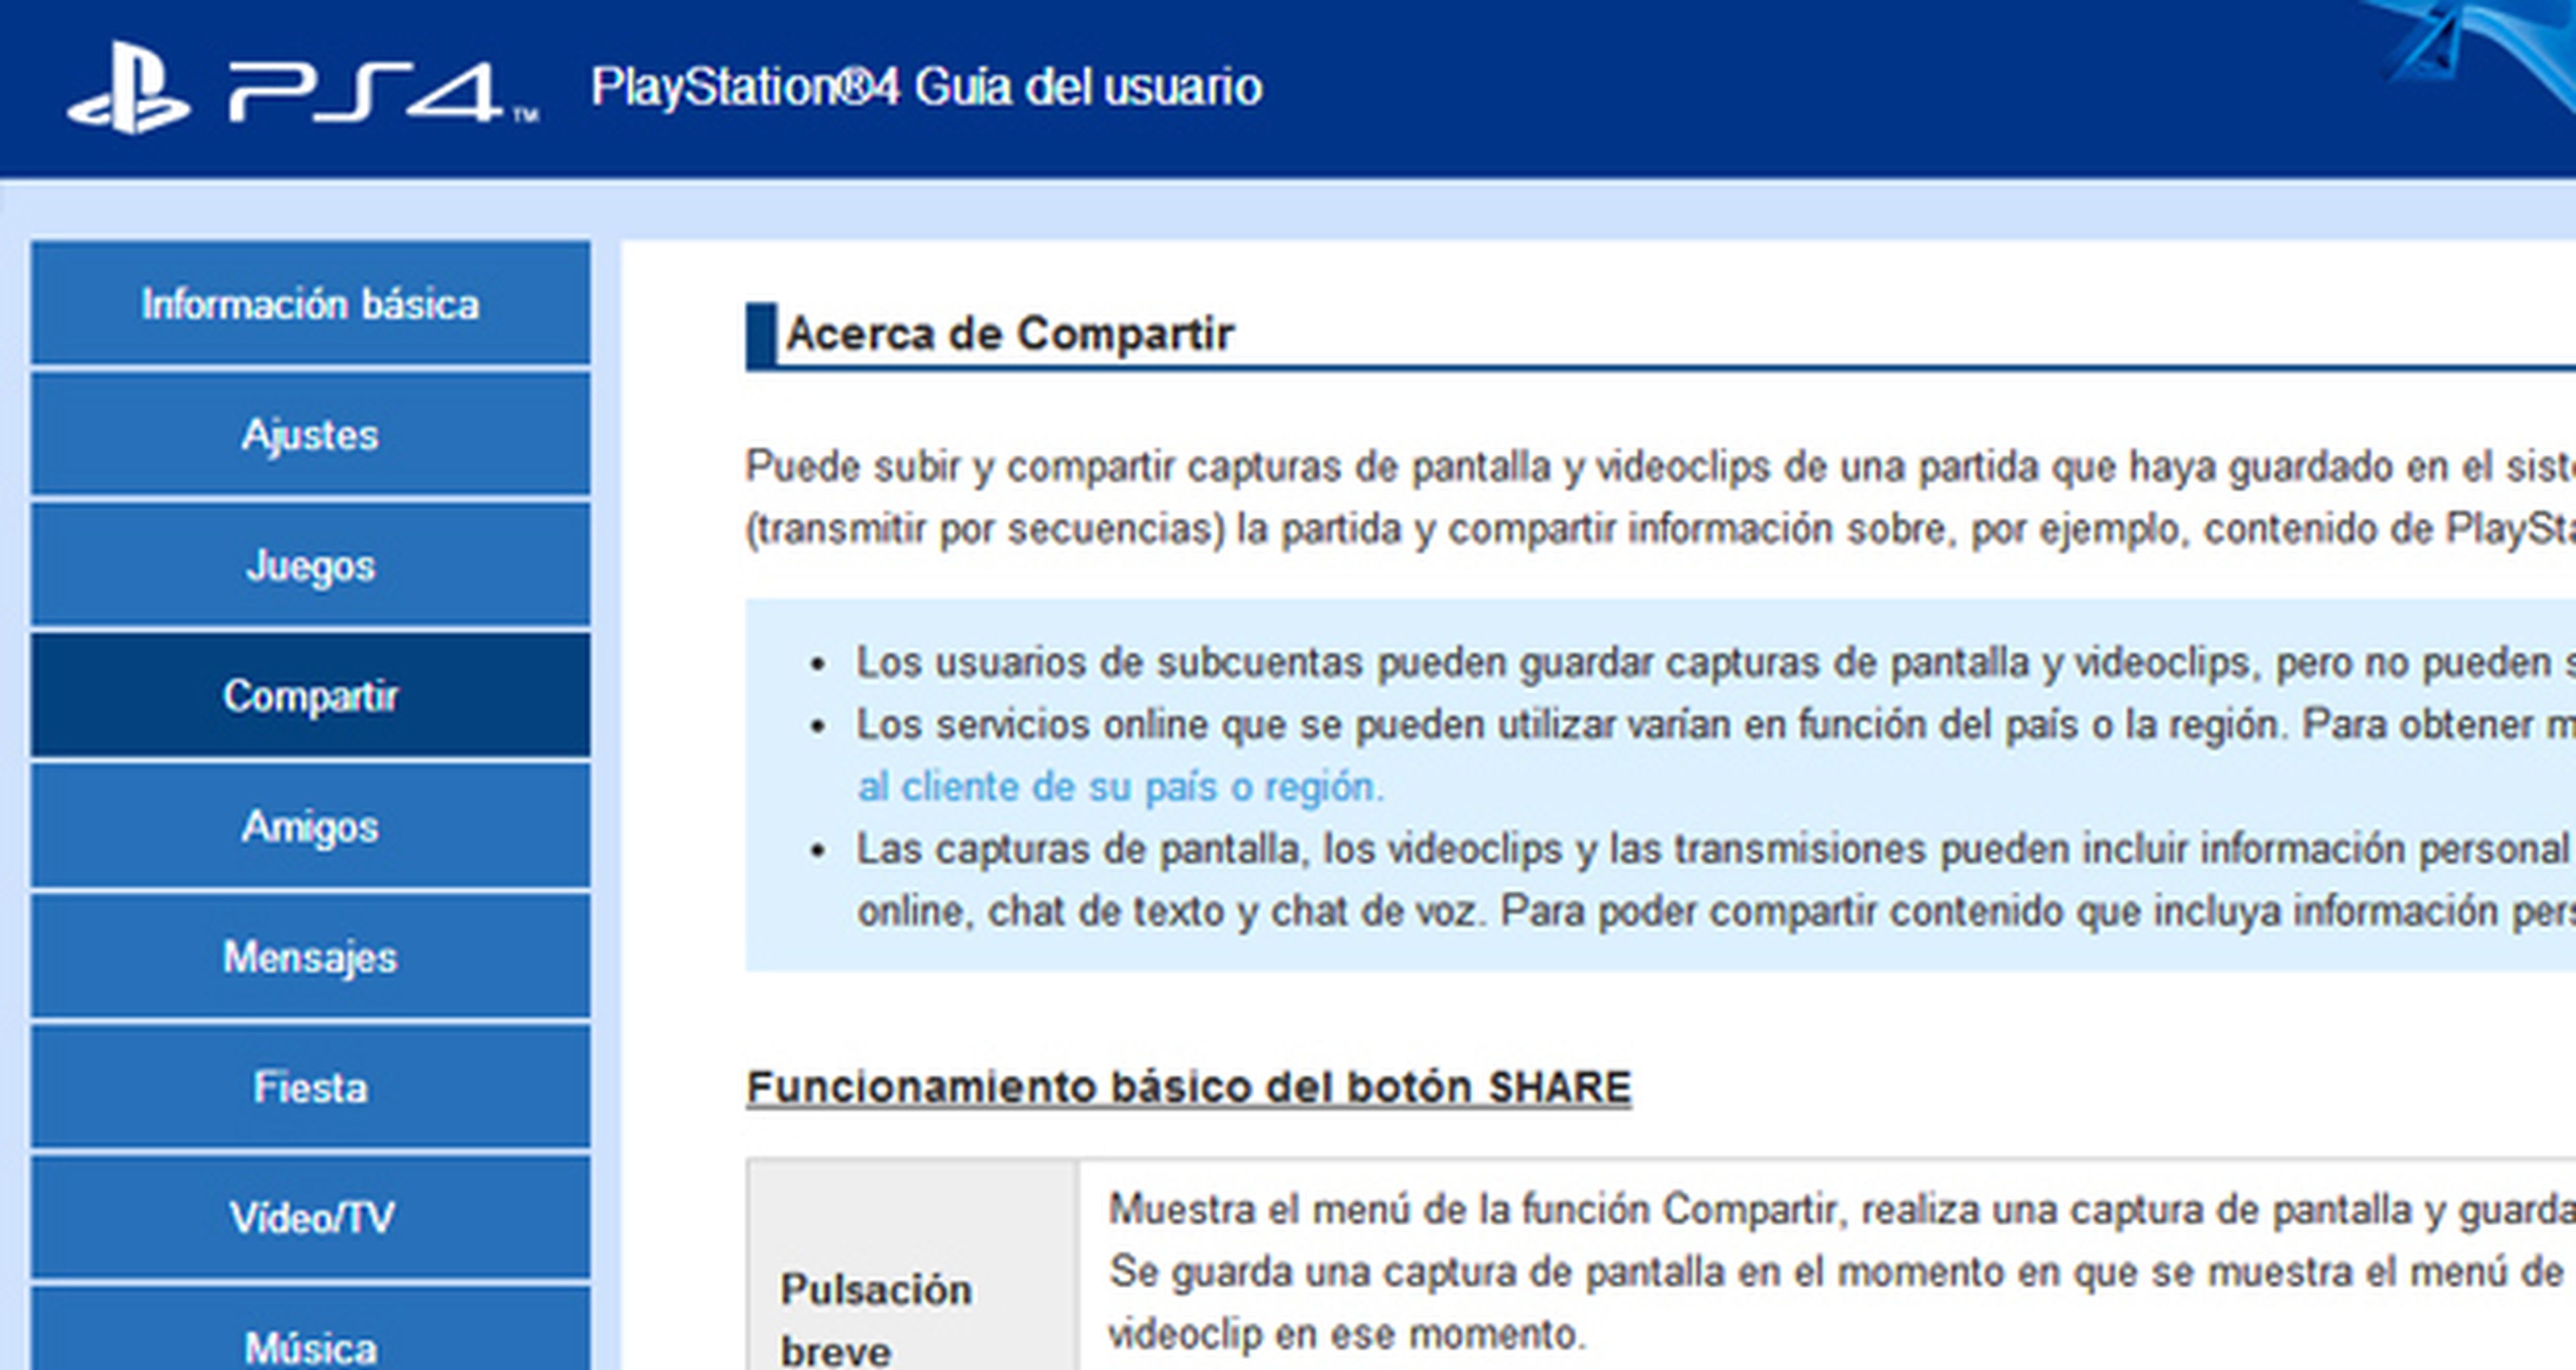 Guía de usuario de PS4 en castellano ya disponible